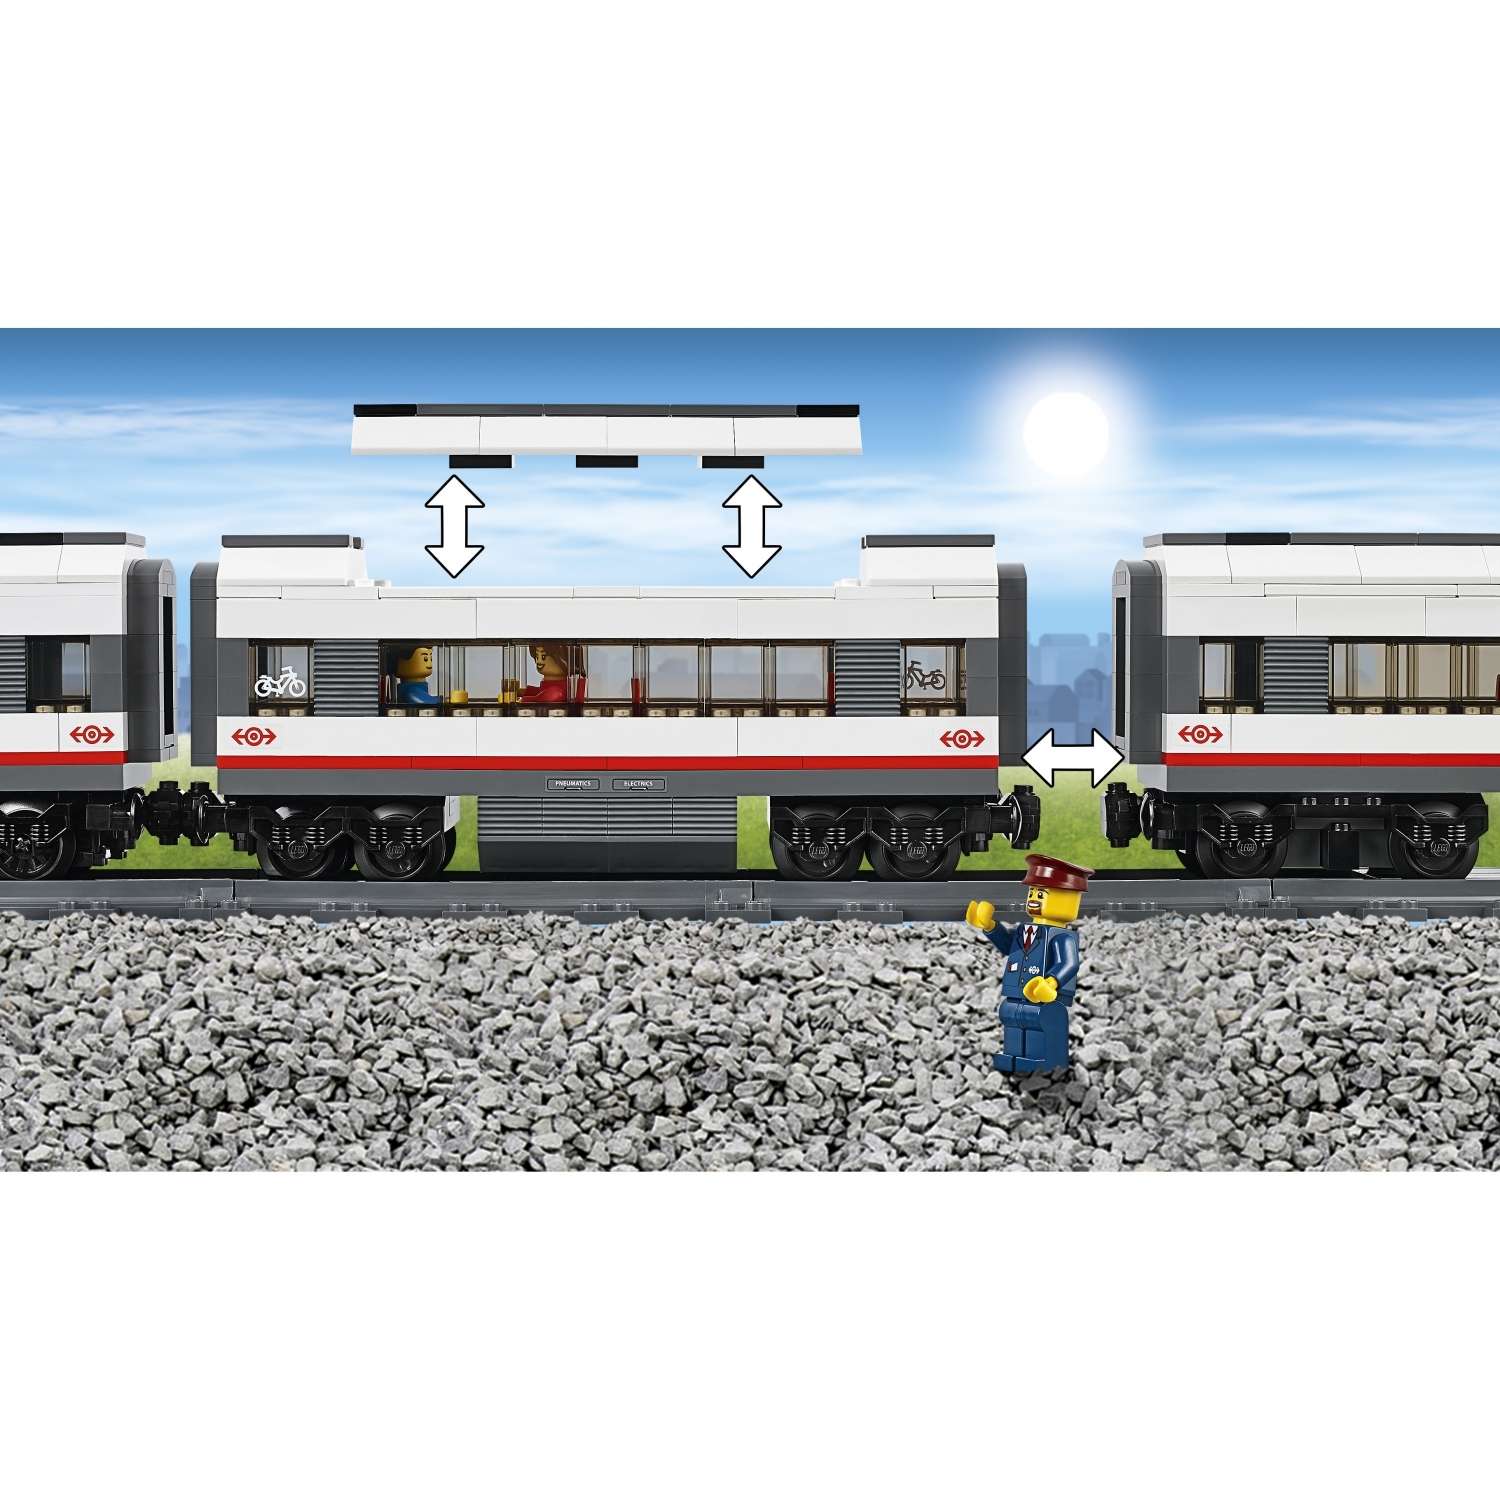 Конструктор LEGO City Trains Скоростной пассажирский поезд (60051) - фото 9